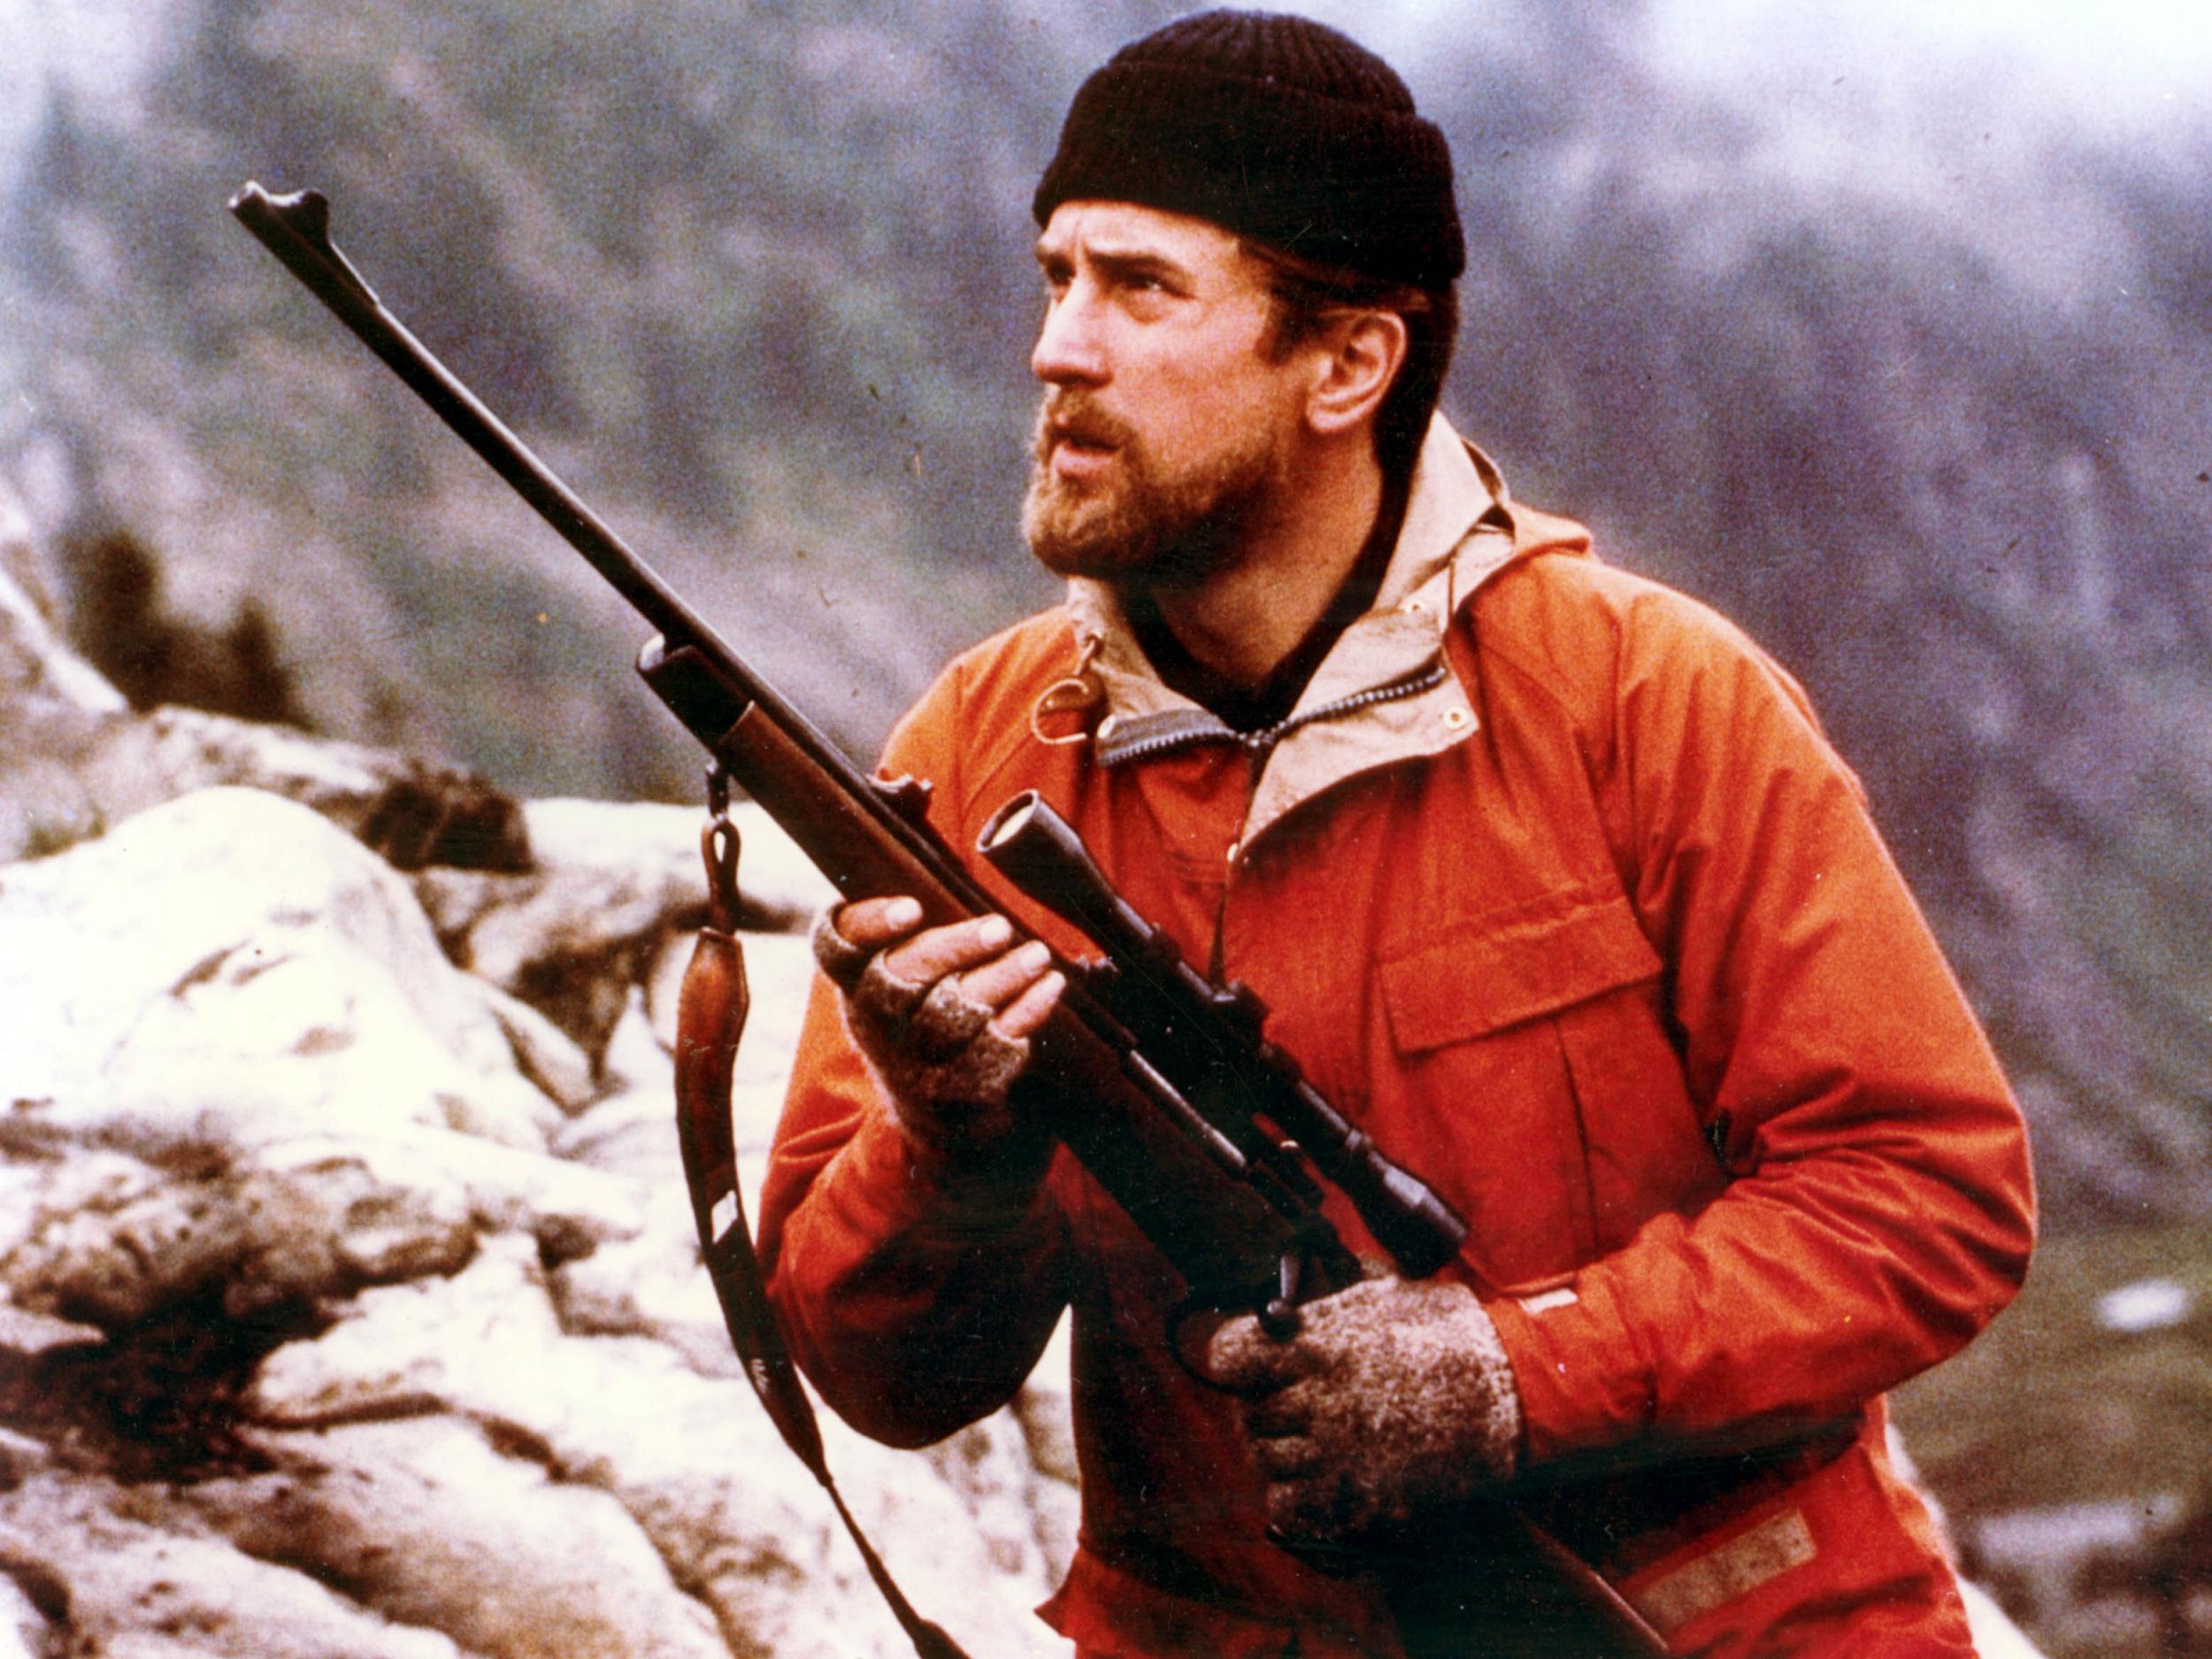 Robert De Niro in ‘The Deer Hunter’, which picked up five Academy Awards